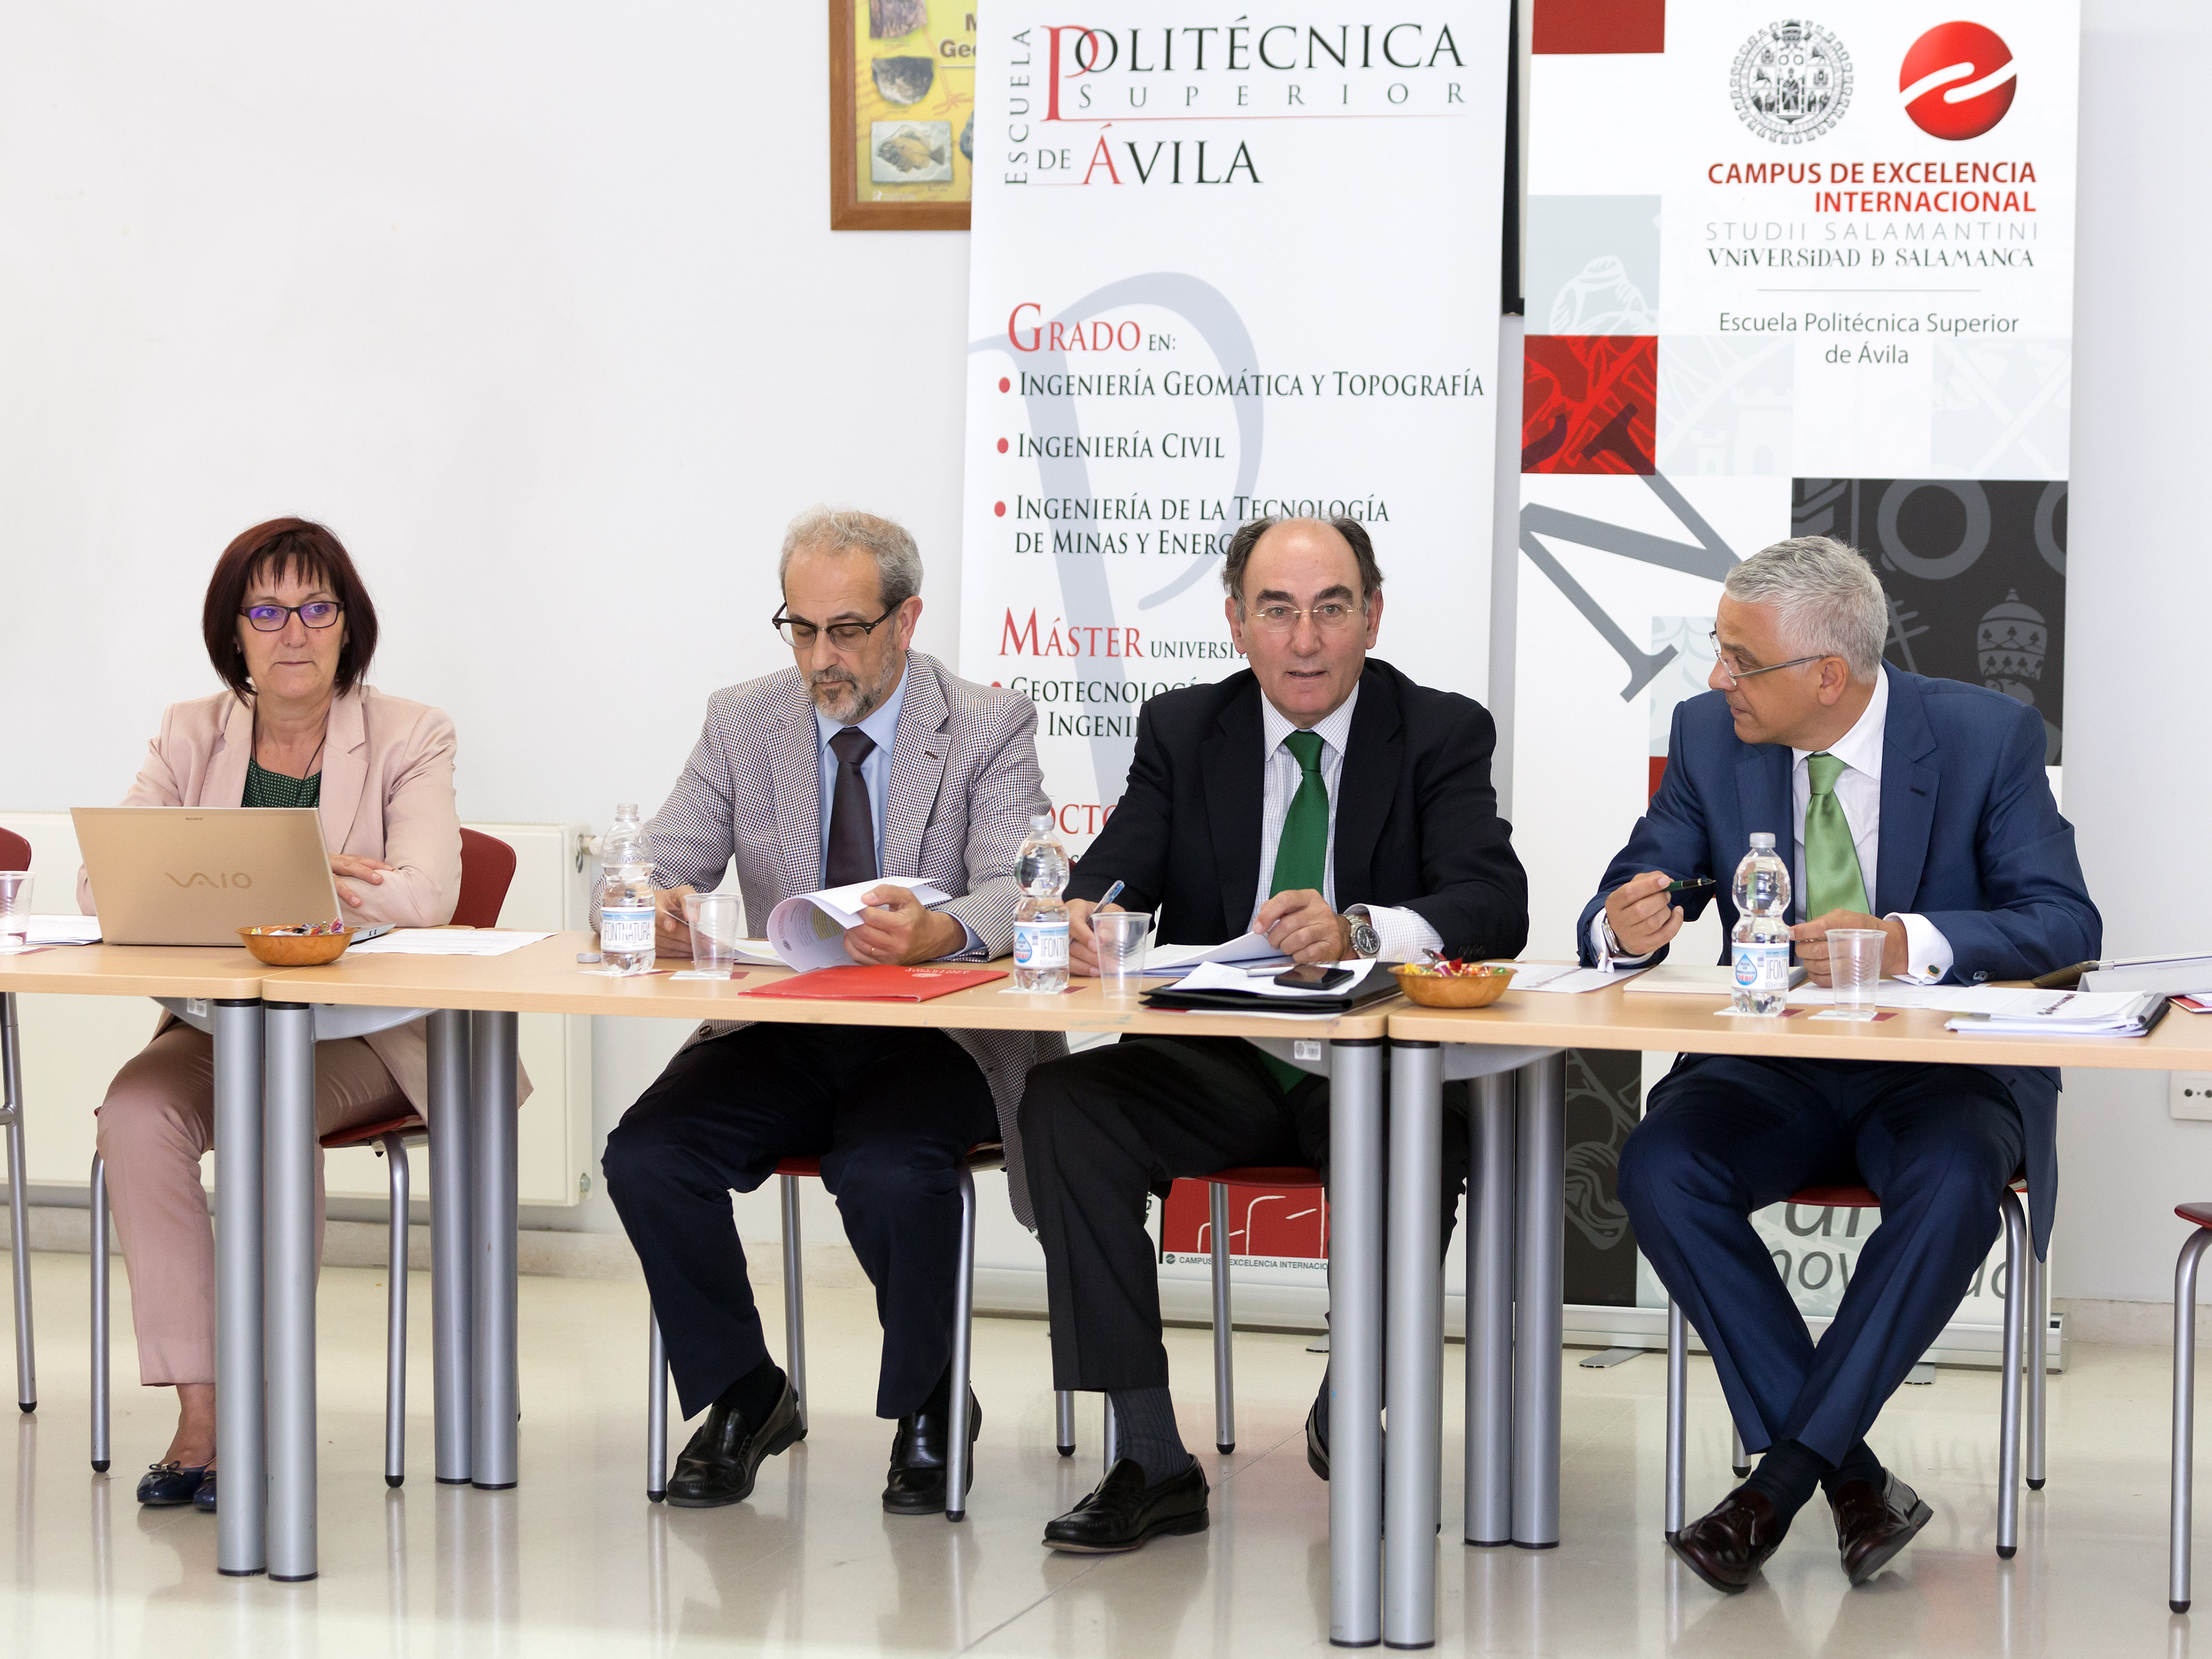 El Consejo Social aprueba los presupuestos de la Universidad de Salamanca para el año 2015, que ascienden a 200.000 €